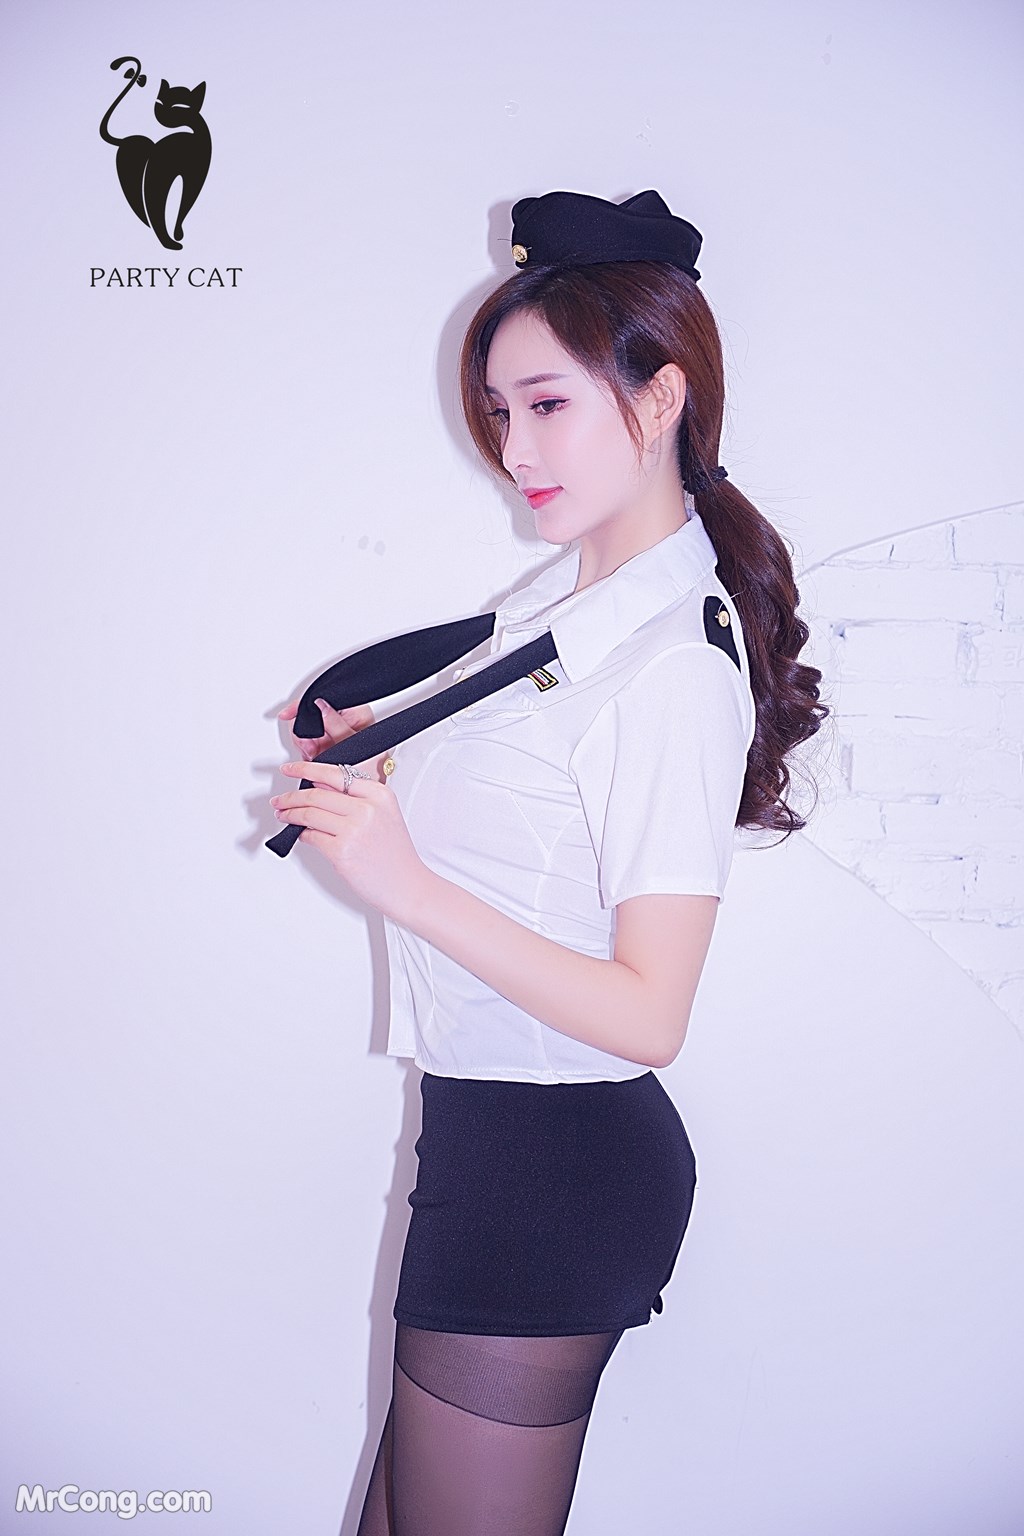 PartyCat Vol.065: Model 土肥 圆 矮 挫 穷 (Tu Fei Yuan Ai Cuo Qiong) (50 photos)